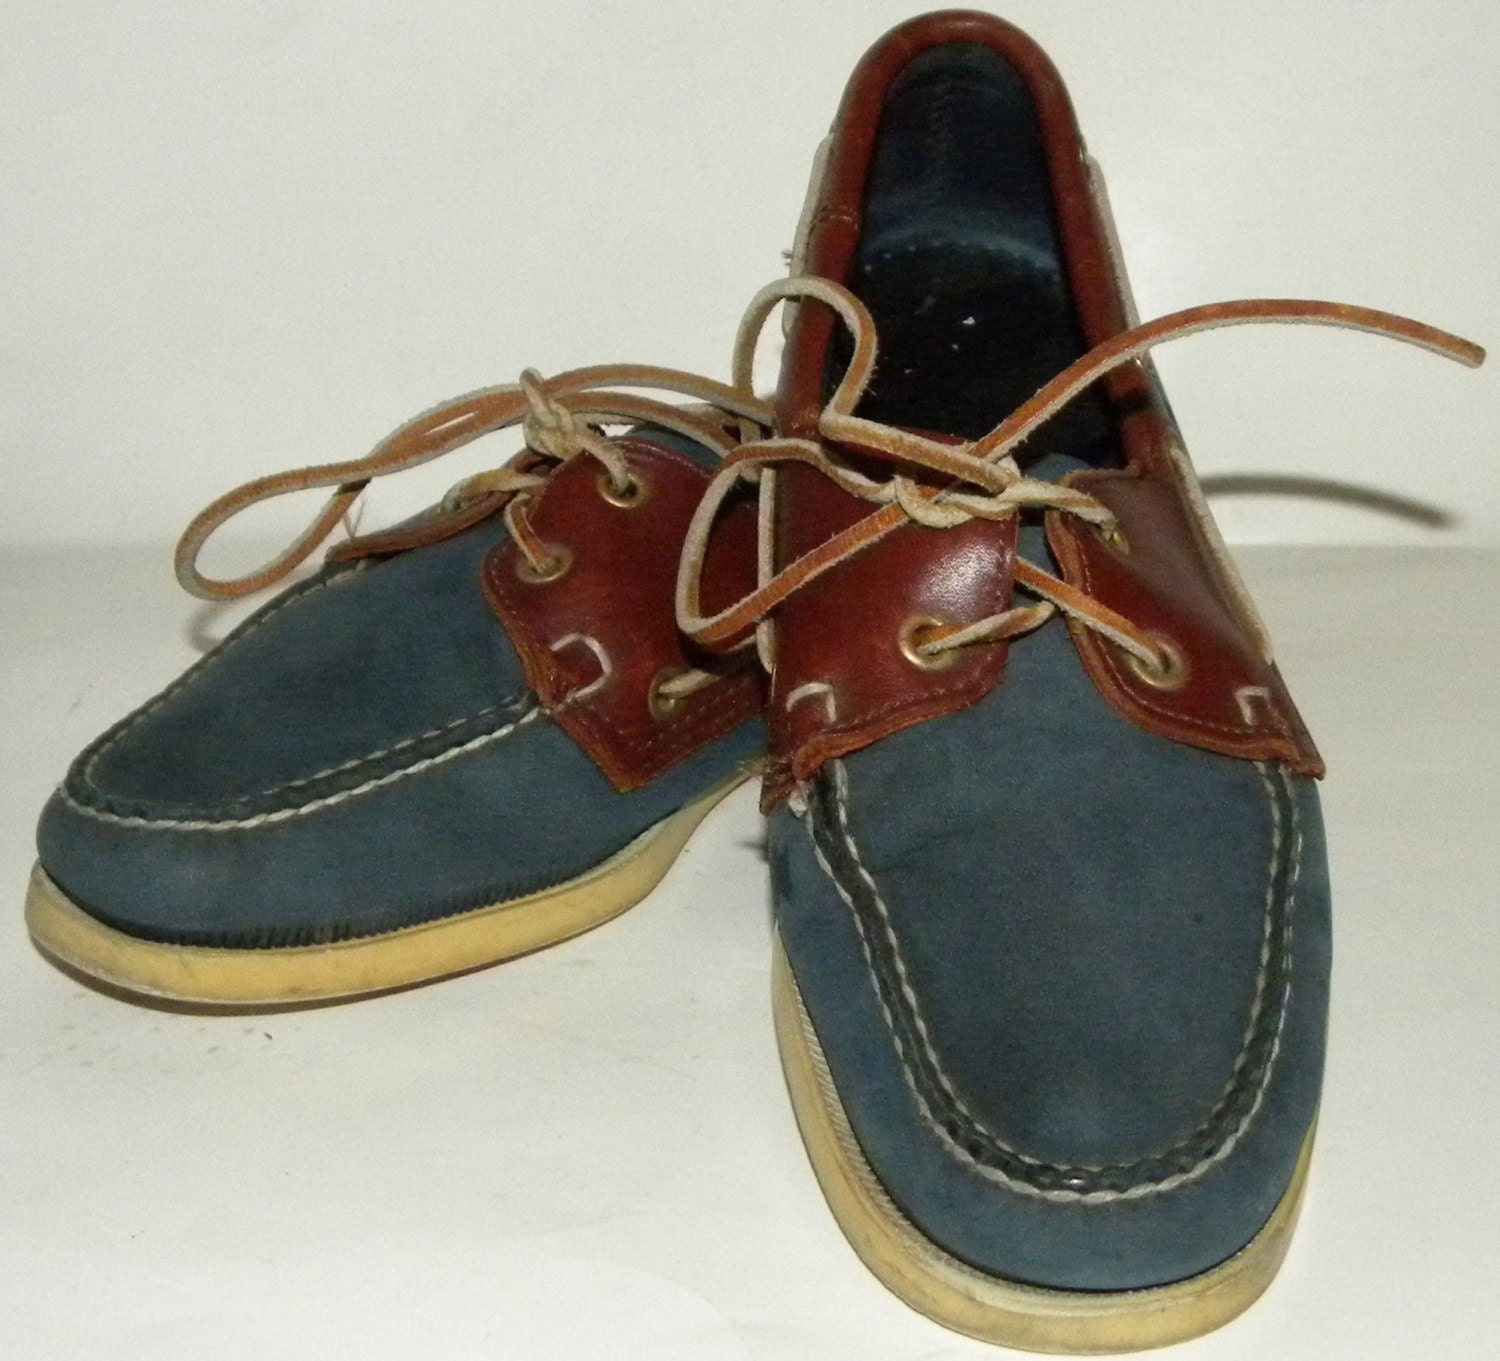 Vintage shoes / Sebago / Docksiders /Top Sider / Boat shoes